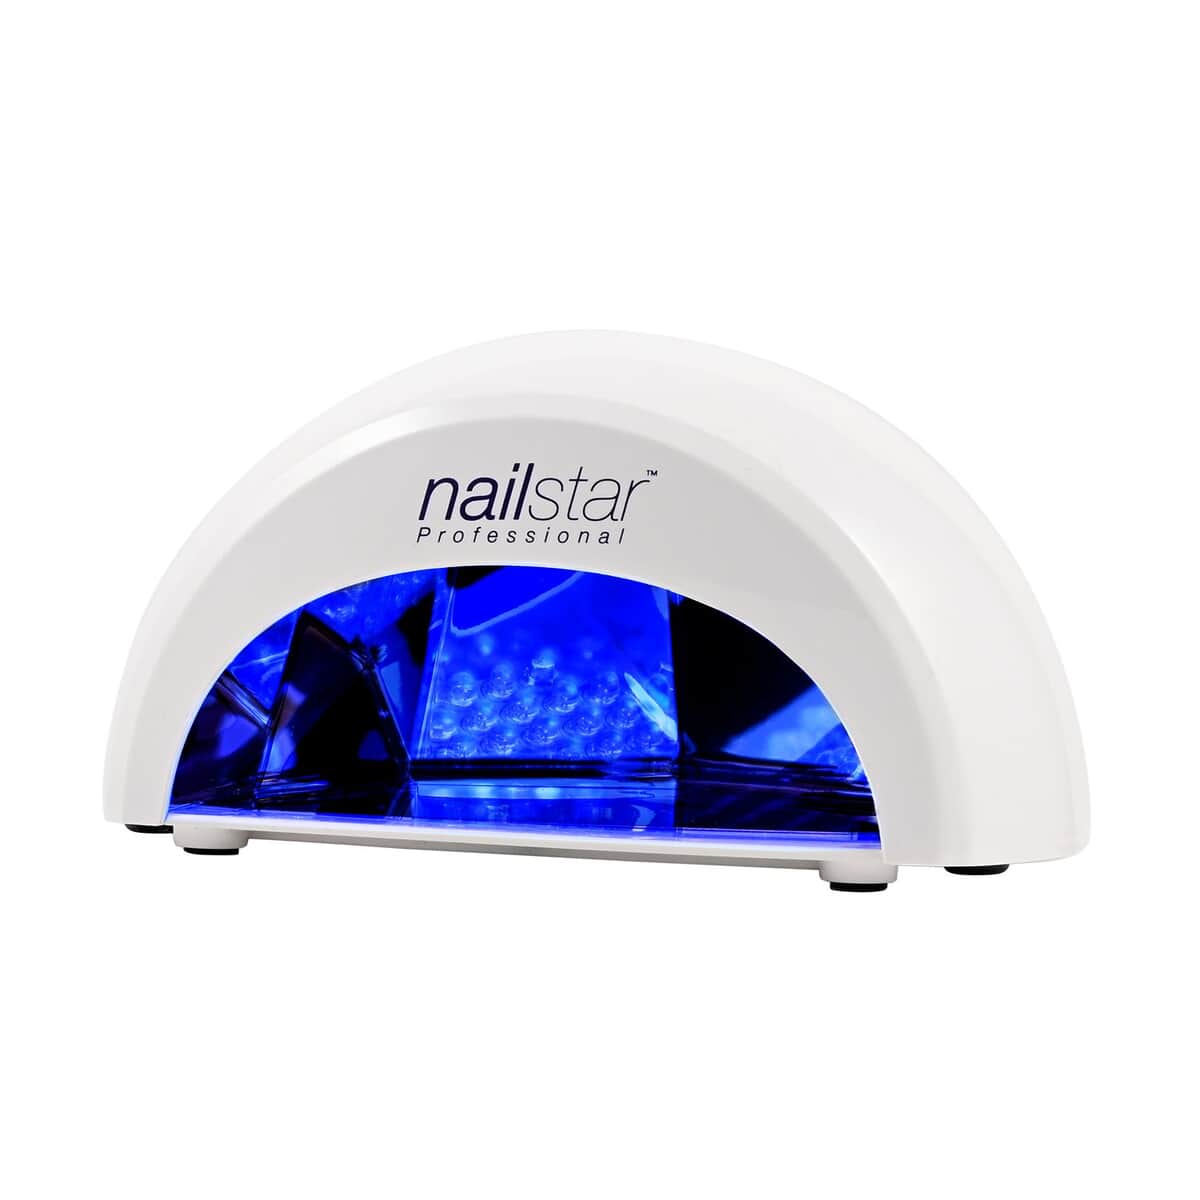 NailStar Professional LED Nail Lamp image number 0